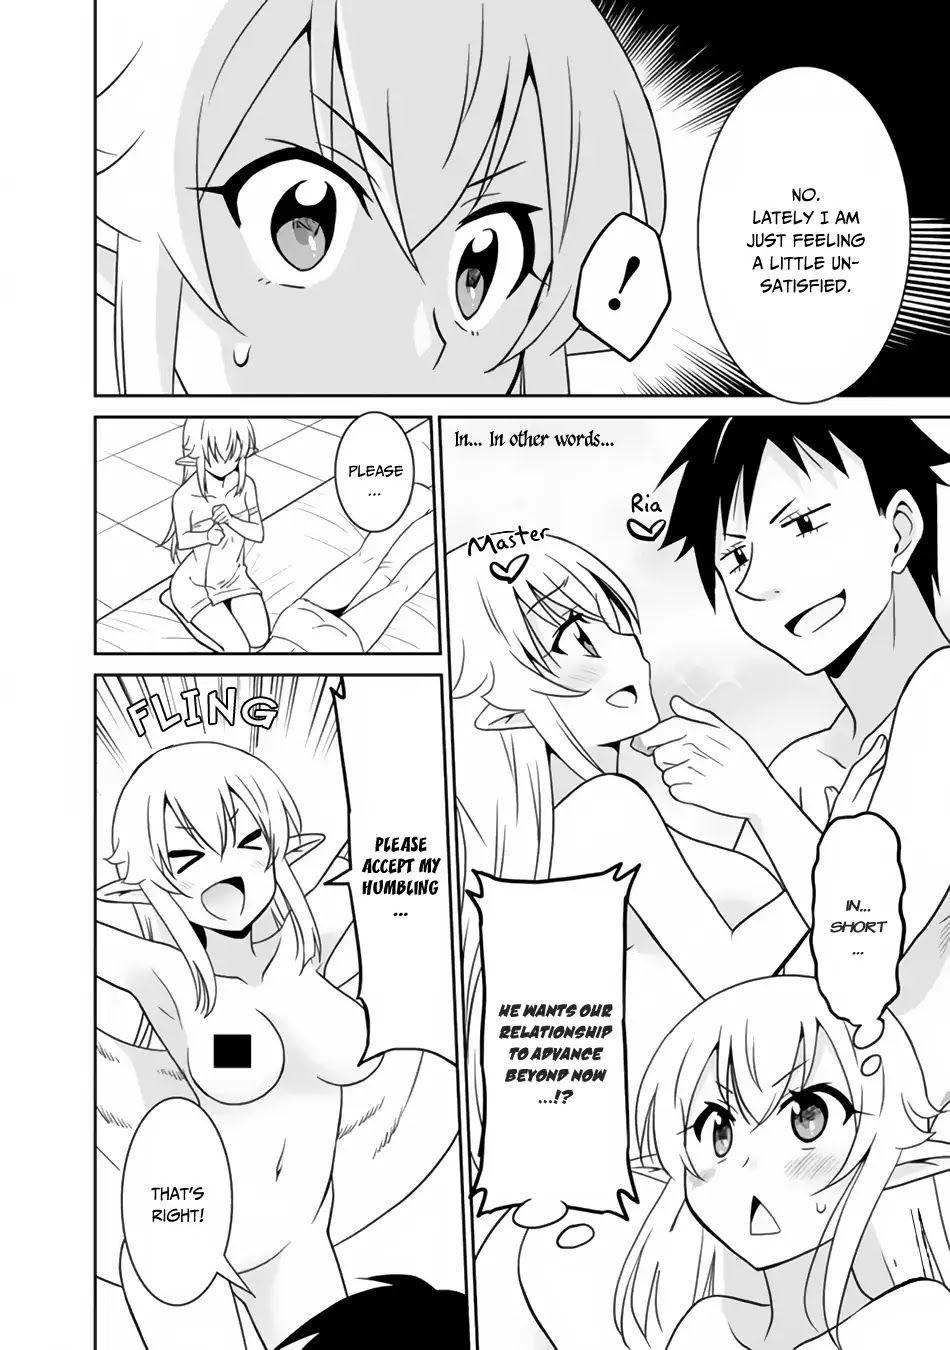 Saikyou no Shuzoku ga Ningen Datta Ken Vol.2 Ch.21 Page 6 - Mangago